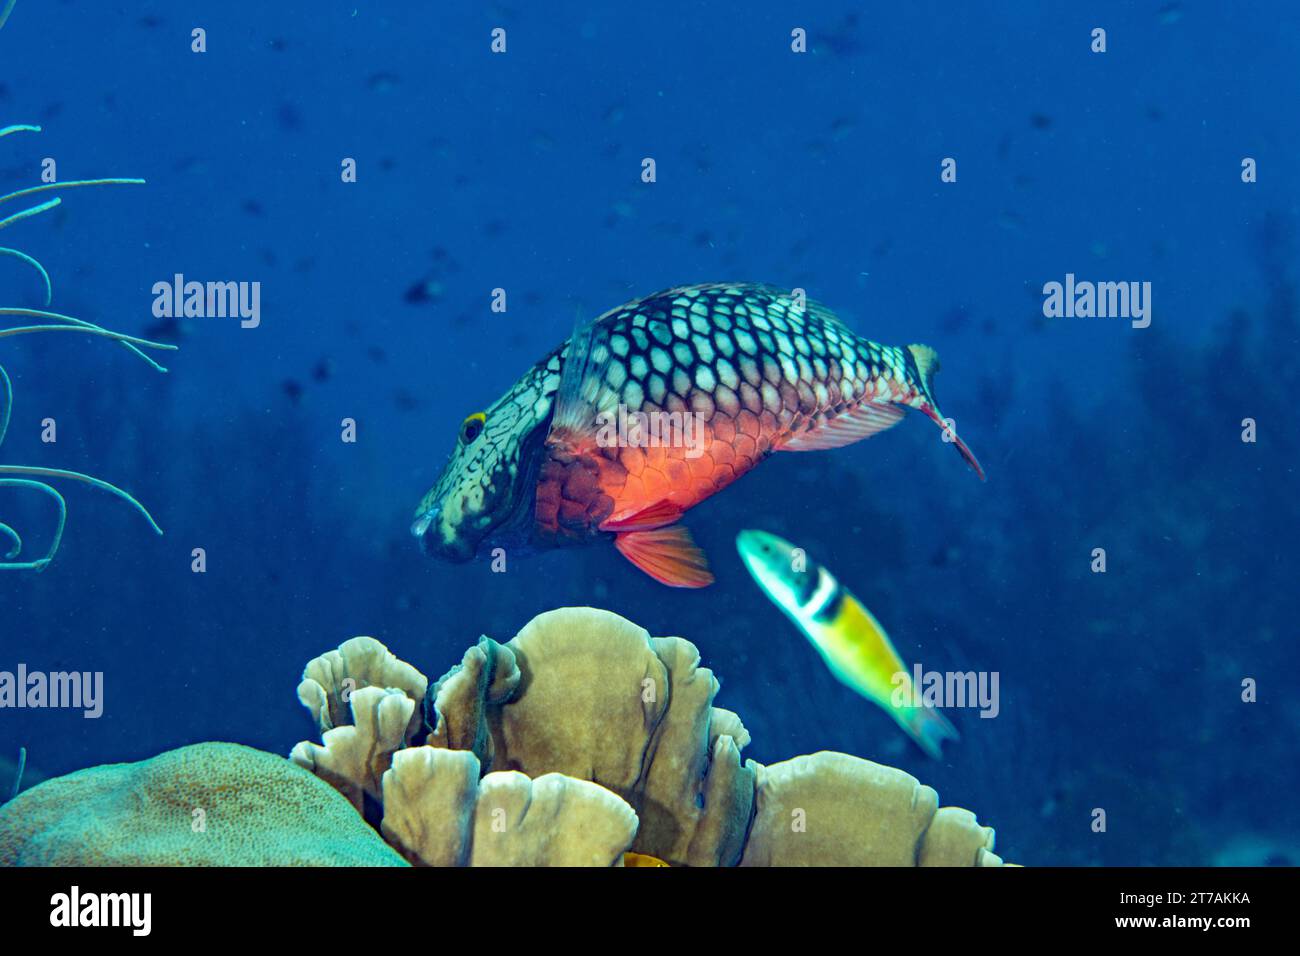 Stoplight Parrotfish on reef in Bonaire Stock Photo